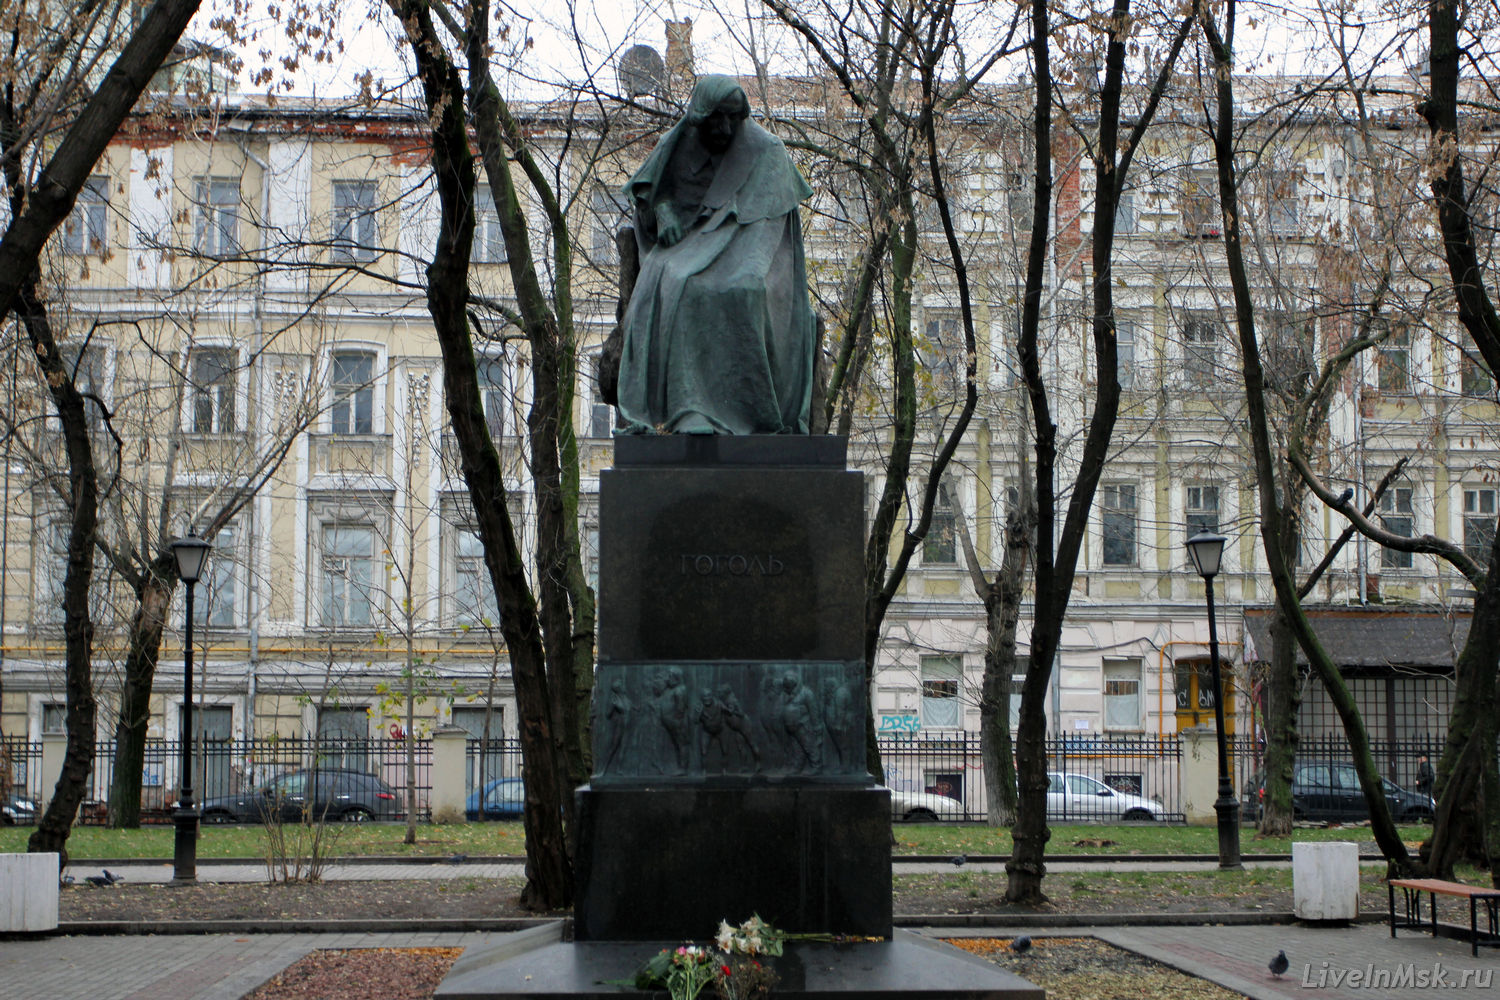 Памятник Гоголю на Никитском бульваре, фото 2014 года